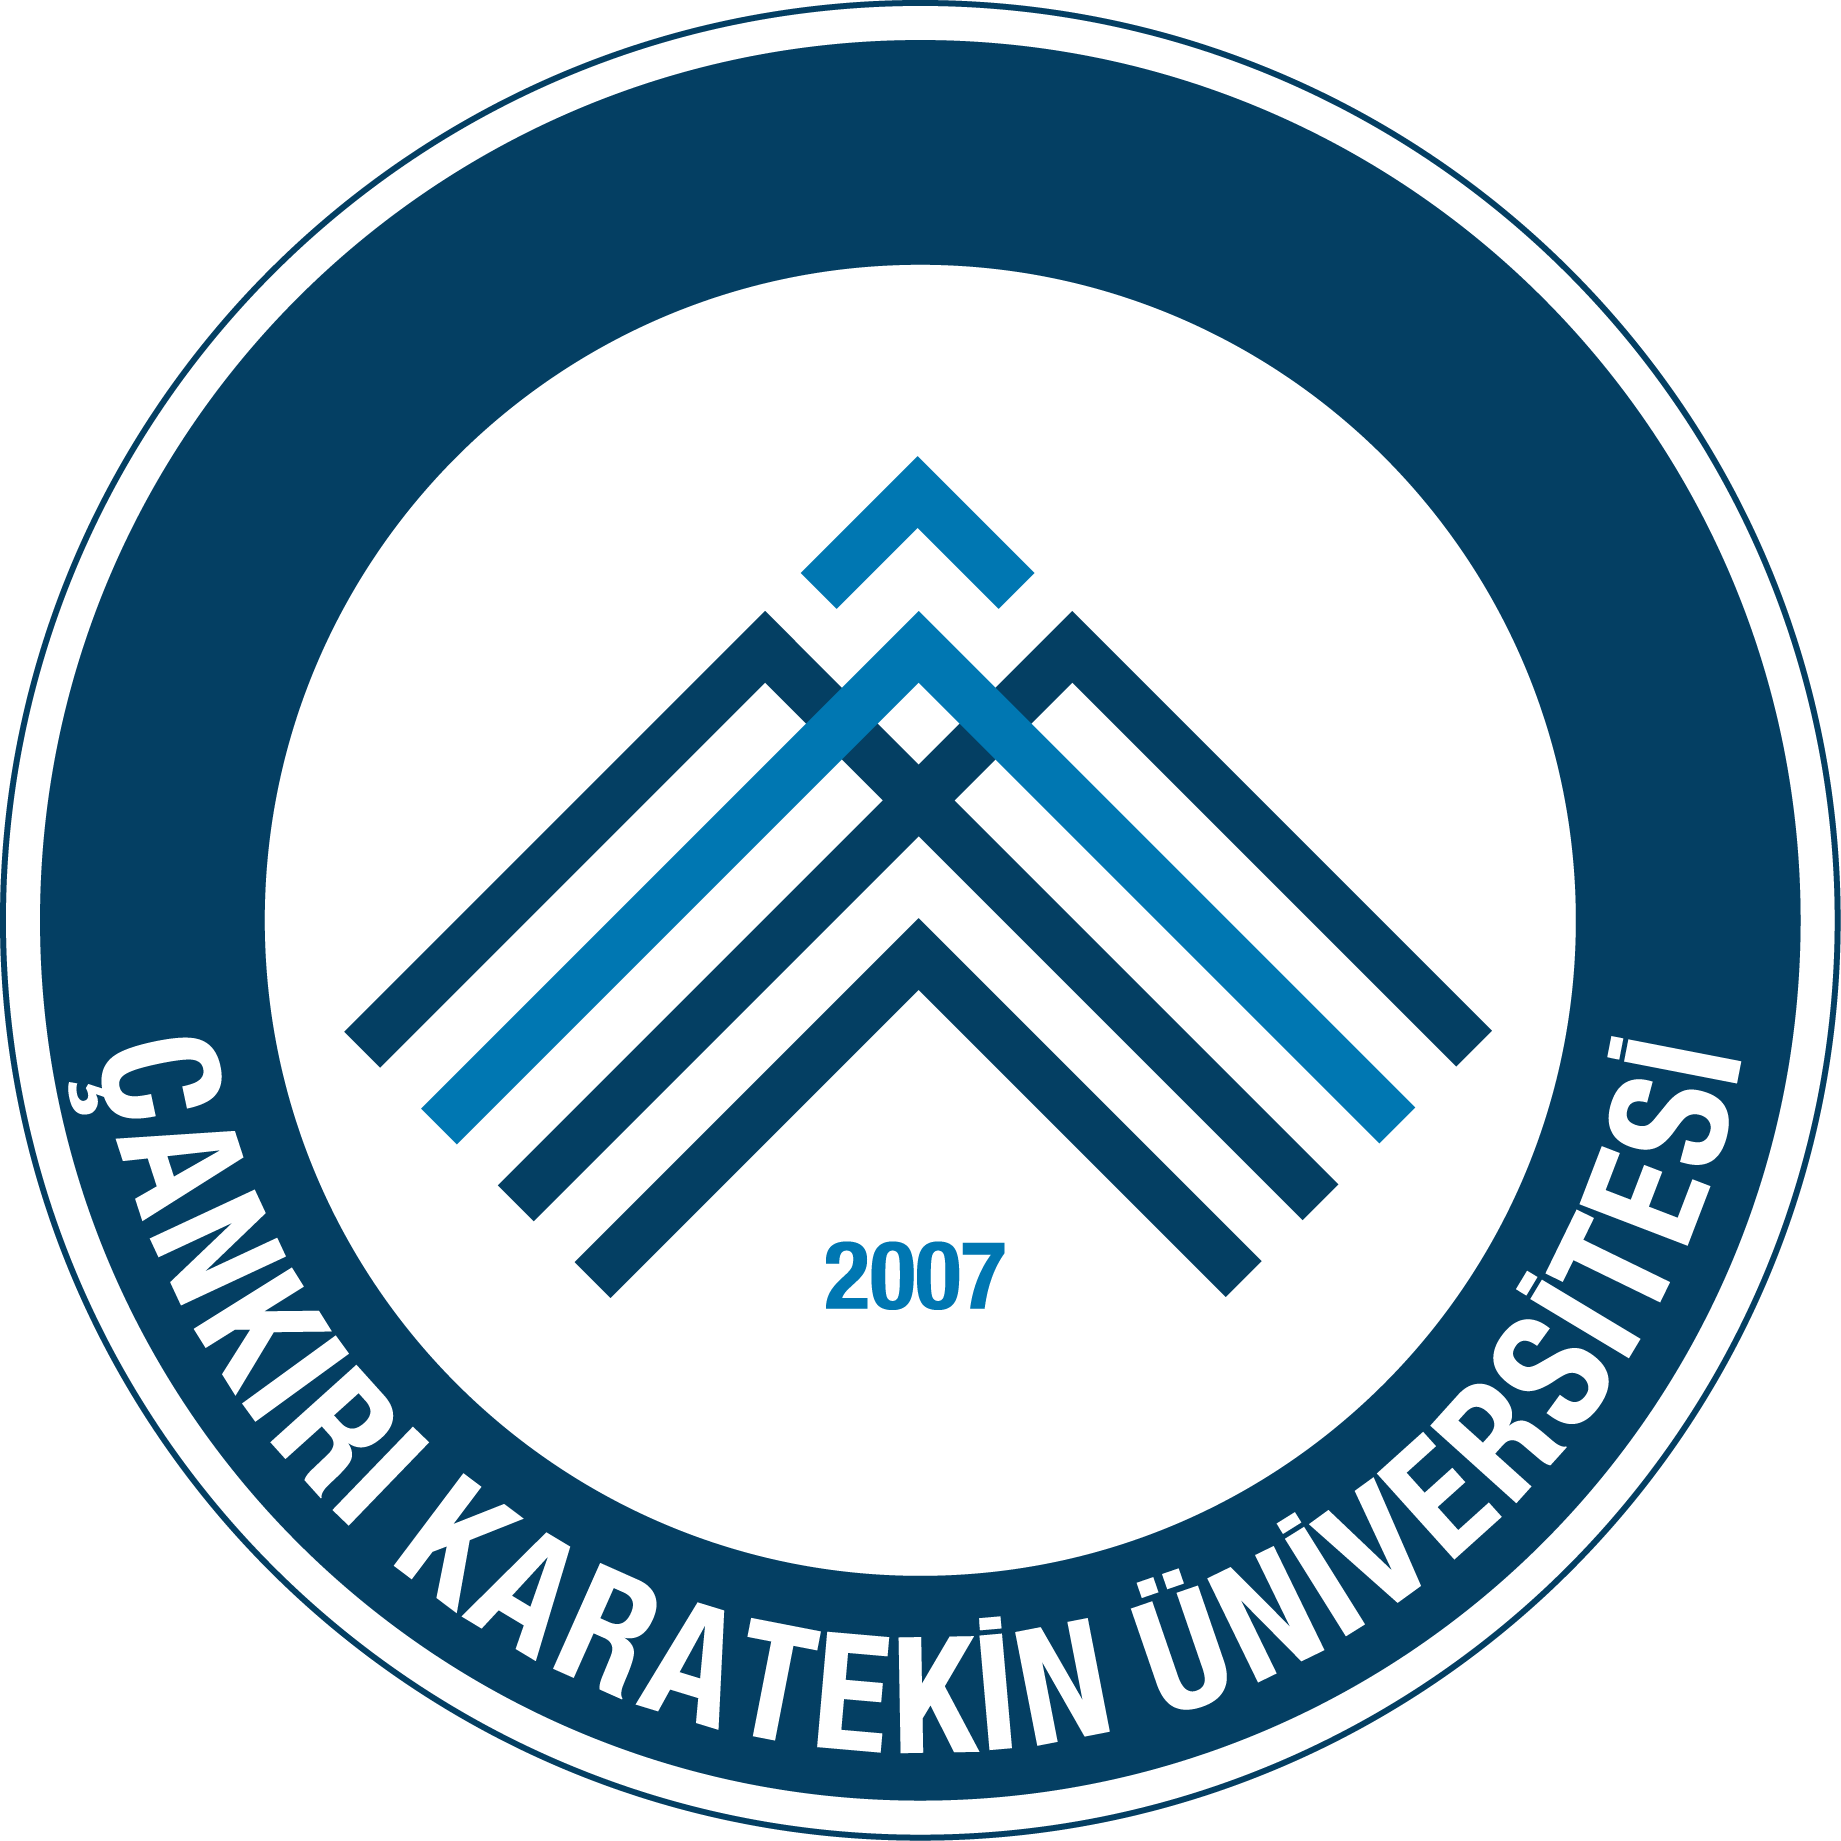 cankiri karatekin universitesi logo